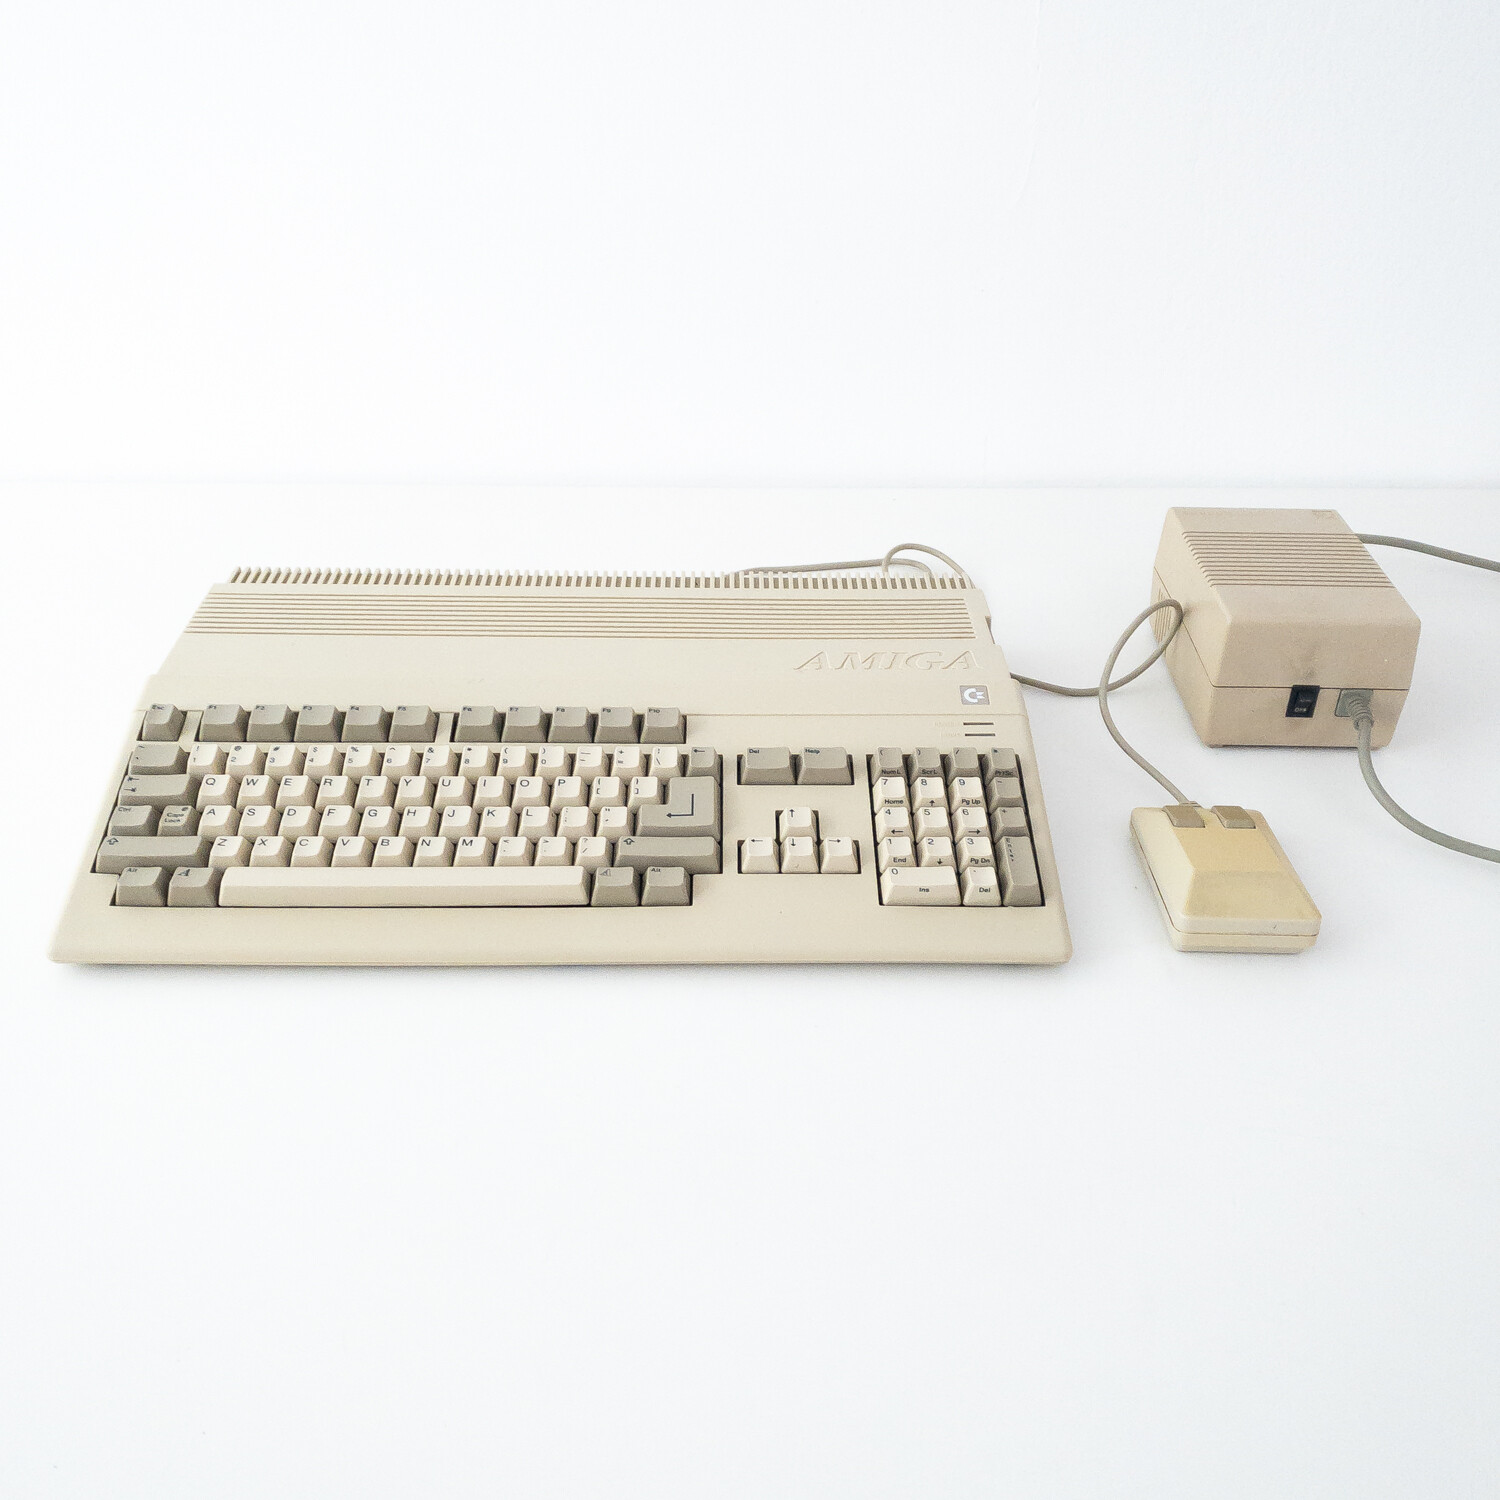 Commodore Amiga Model 500